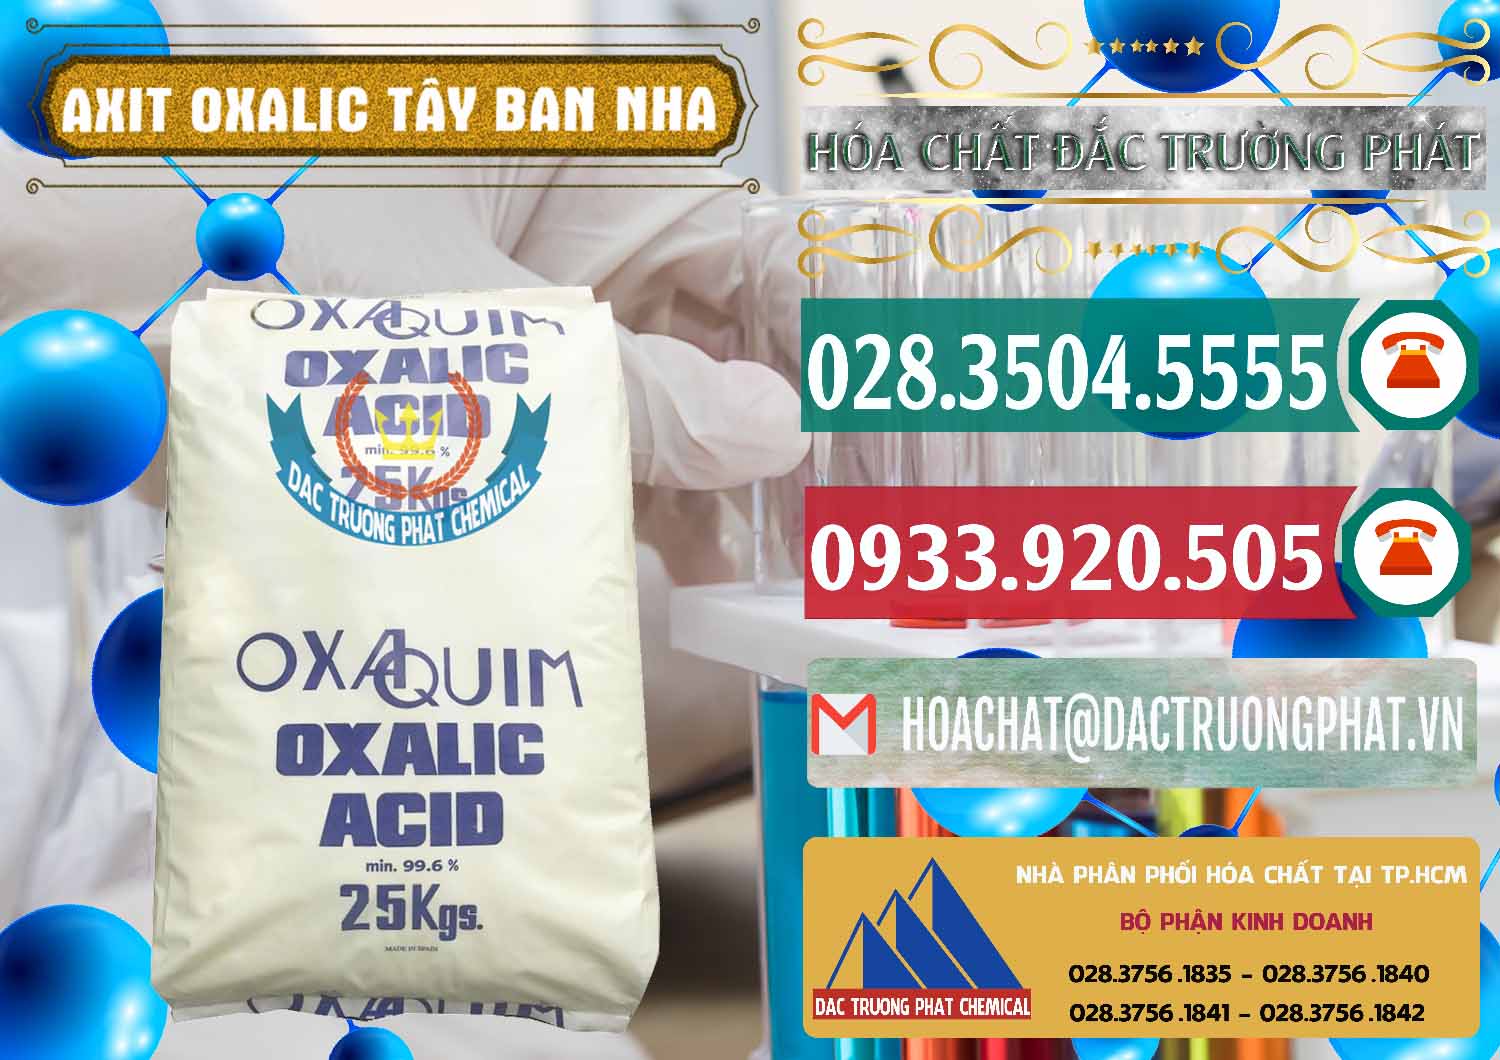 Cty chuyên bán - phân phối Acid Oxalic – Axit Oxalic 99.6% Tây Ban Nha Spain - 0269 - Cty nhập khẩu ( phân phối ) hóa chất tại TP.HCM - muabanhoachat.vn